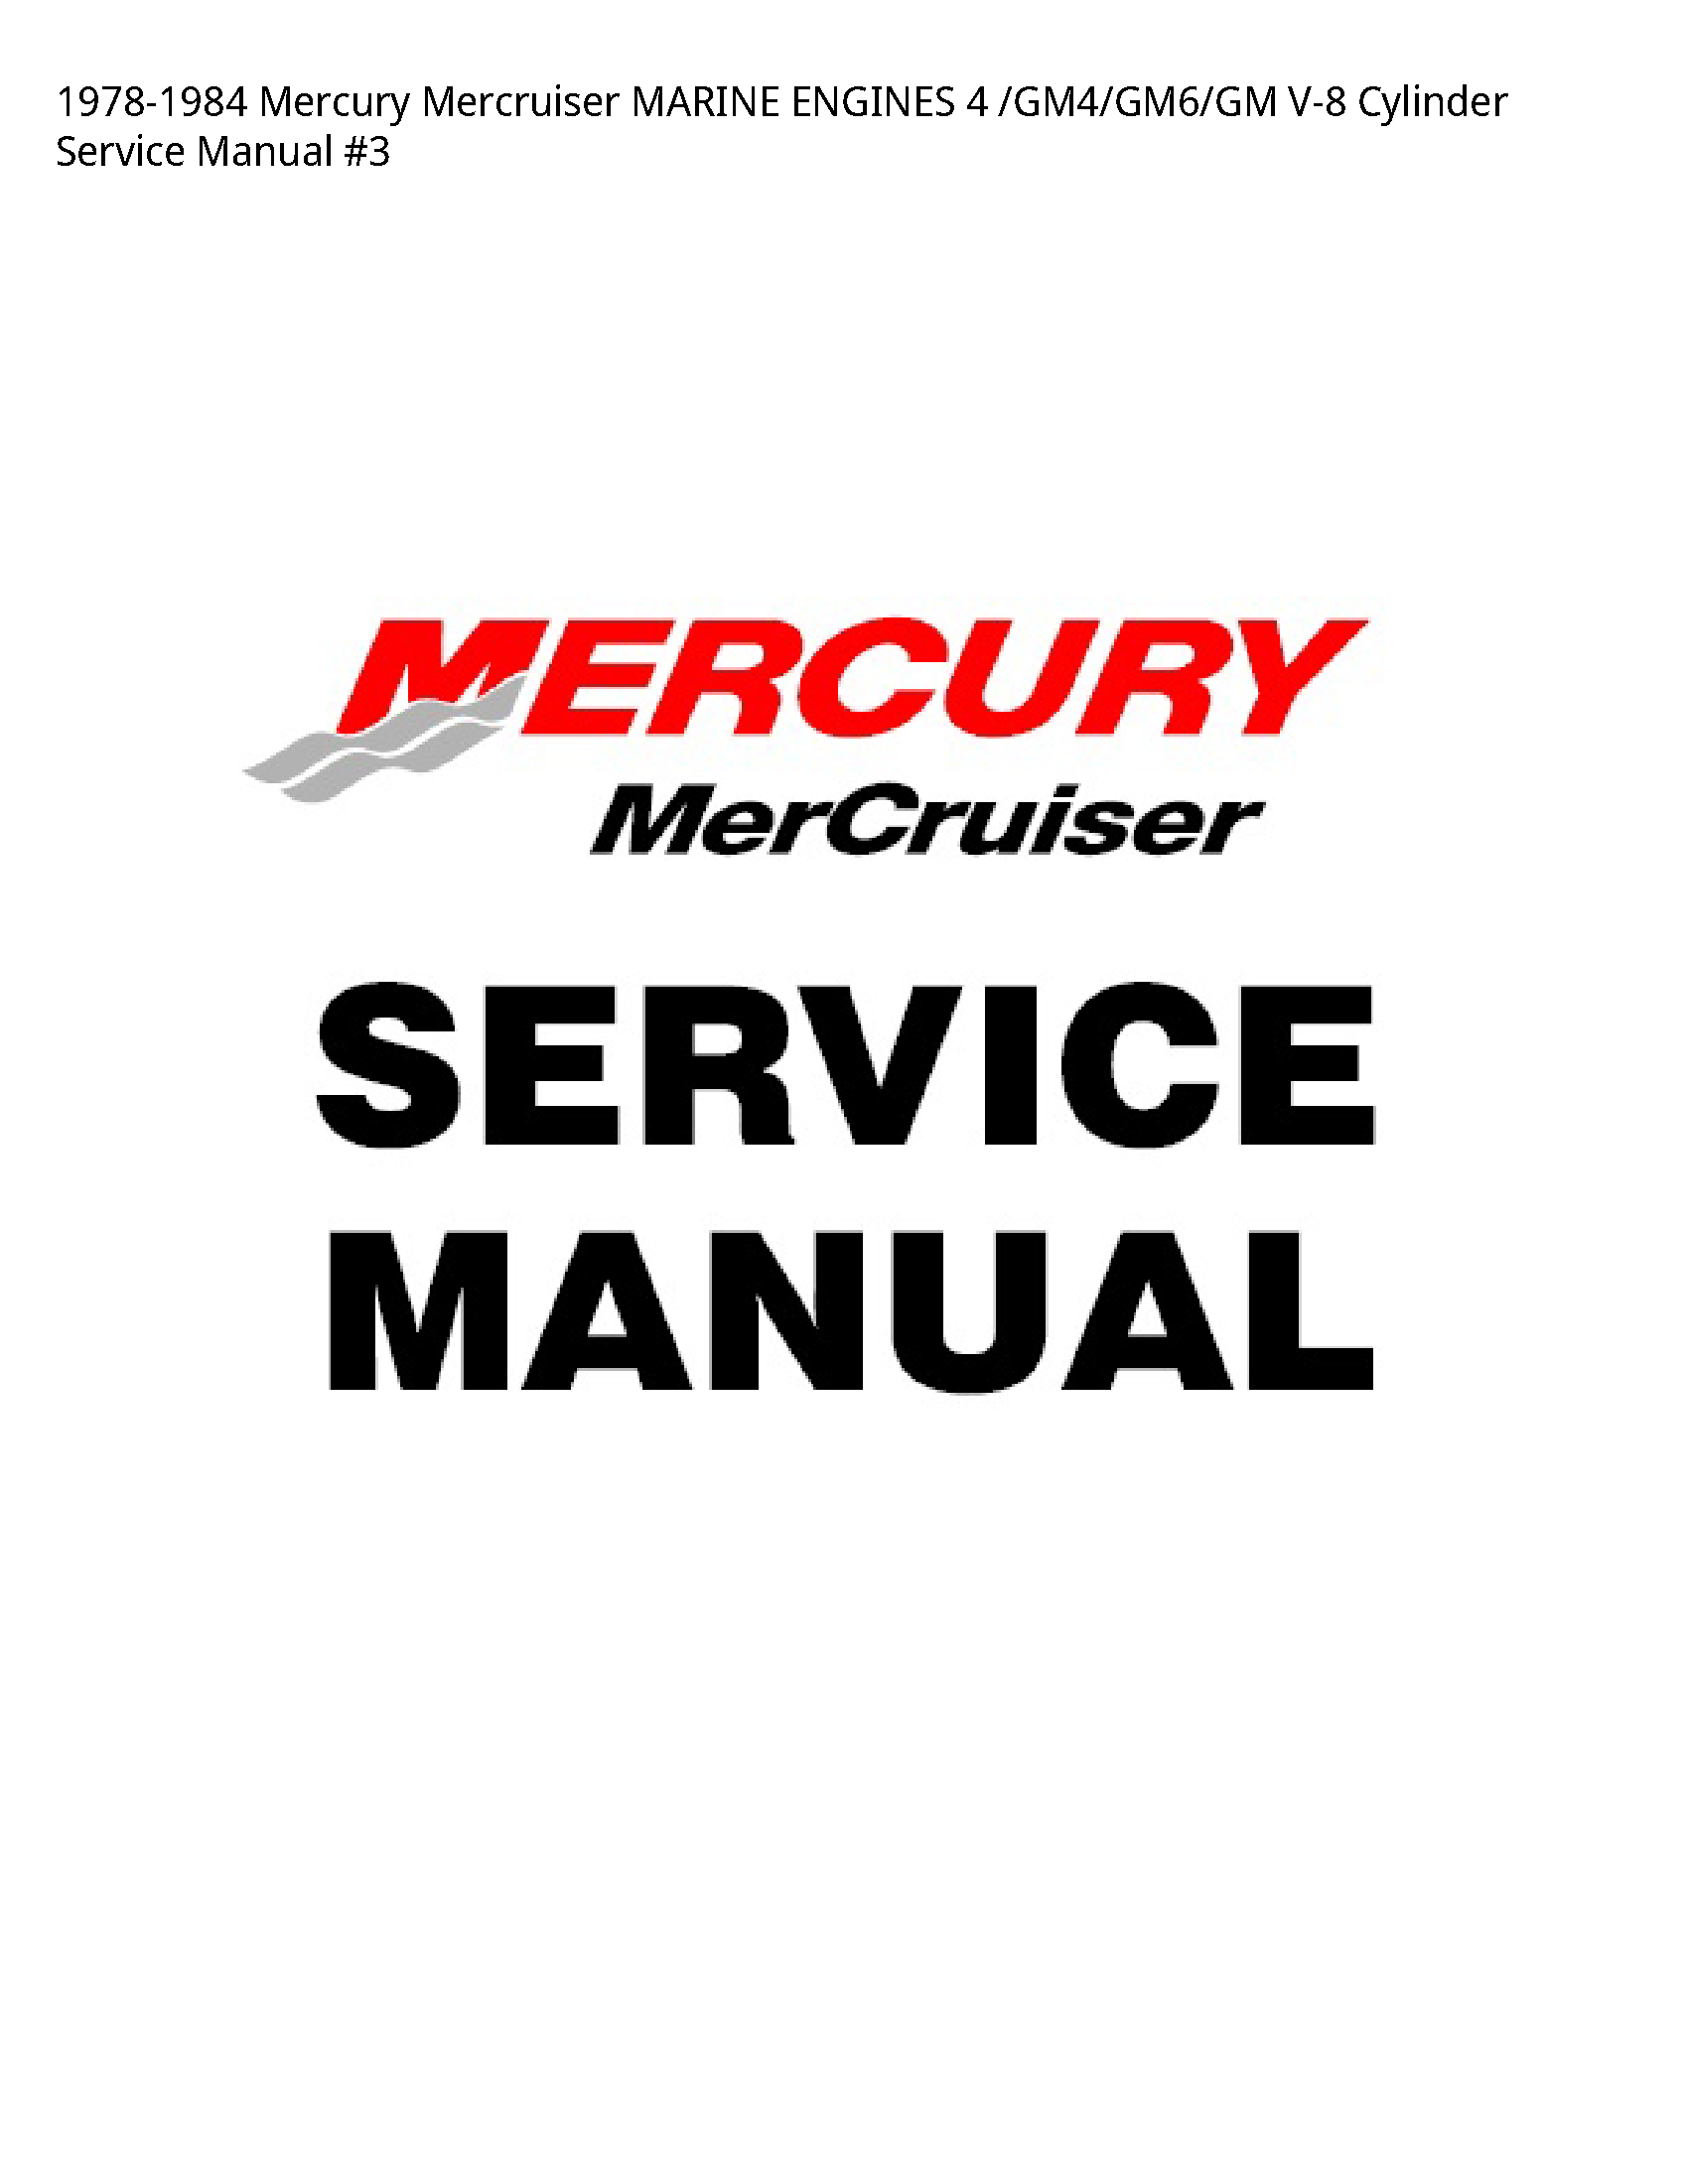 Mercury 4 Mercruiser MARINE ENGINES Cylinder Service manual